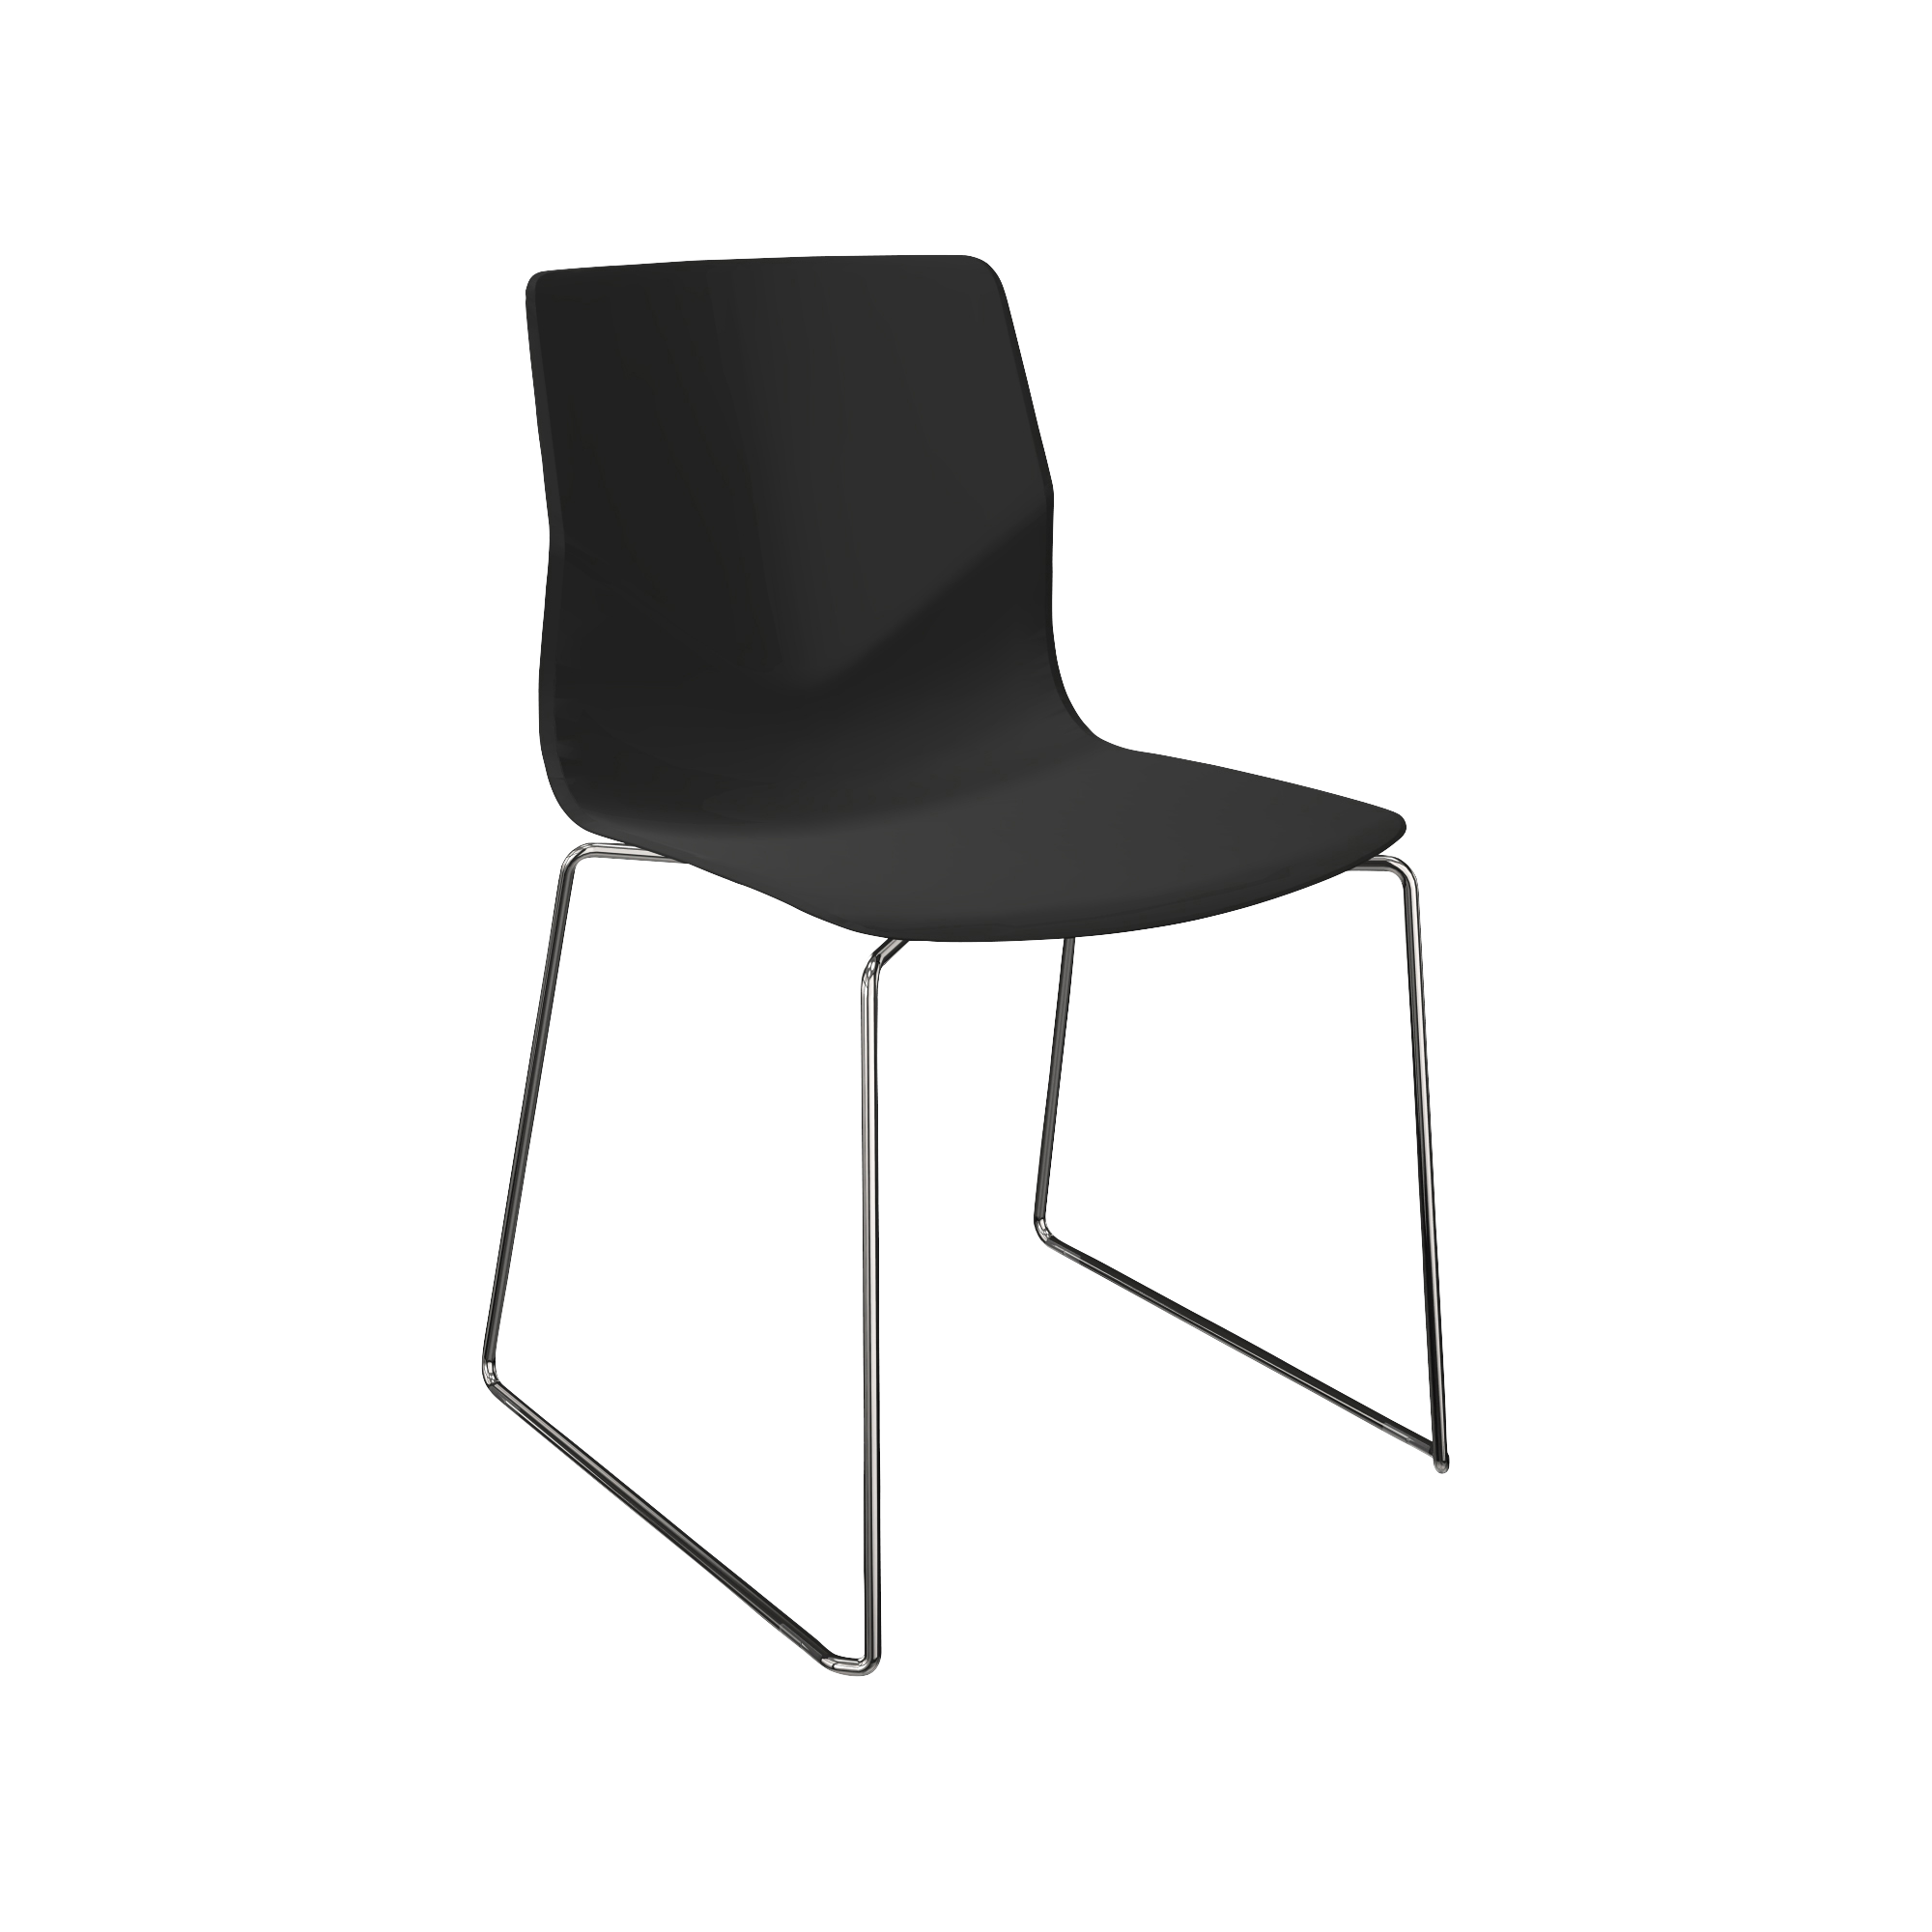 A black plastic chair